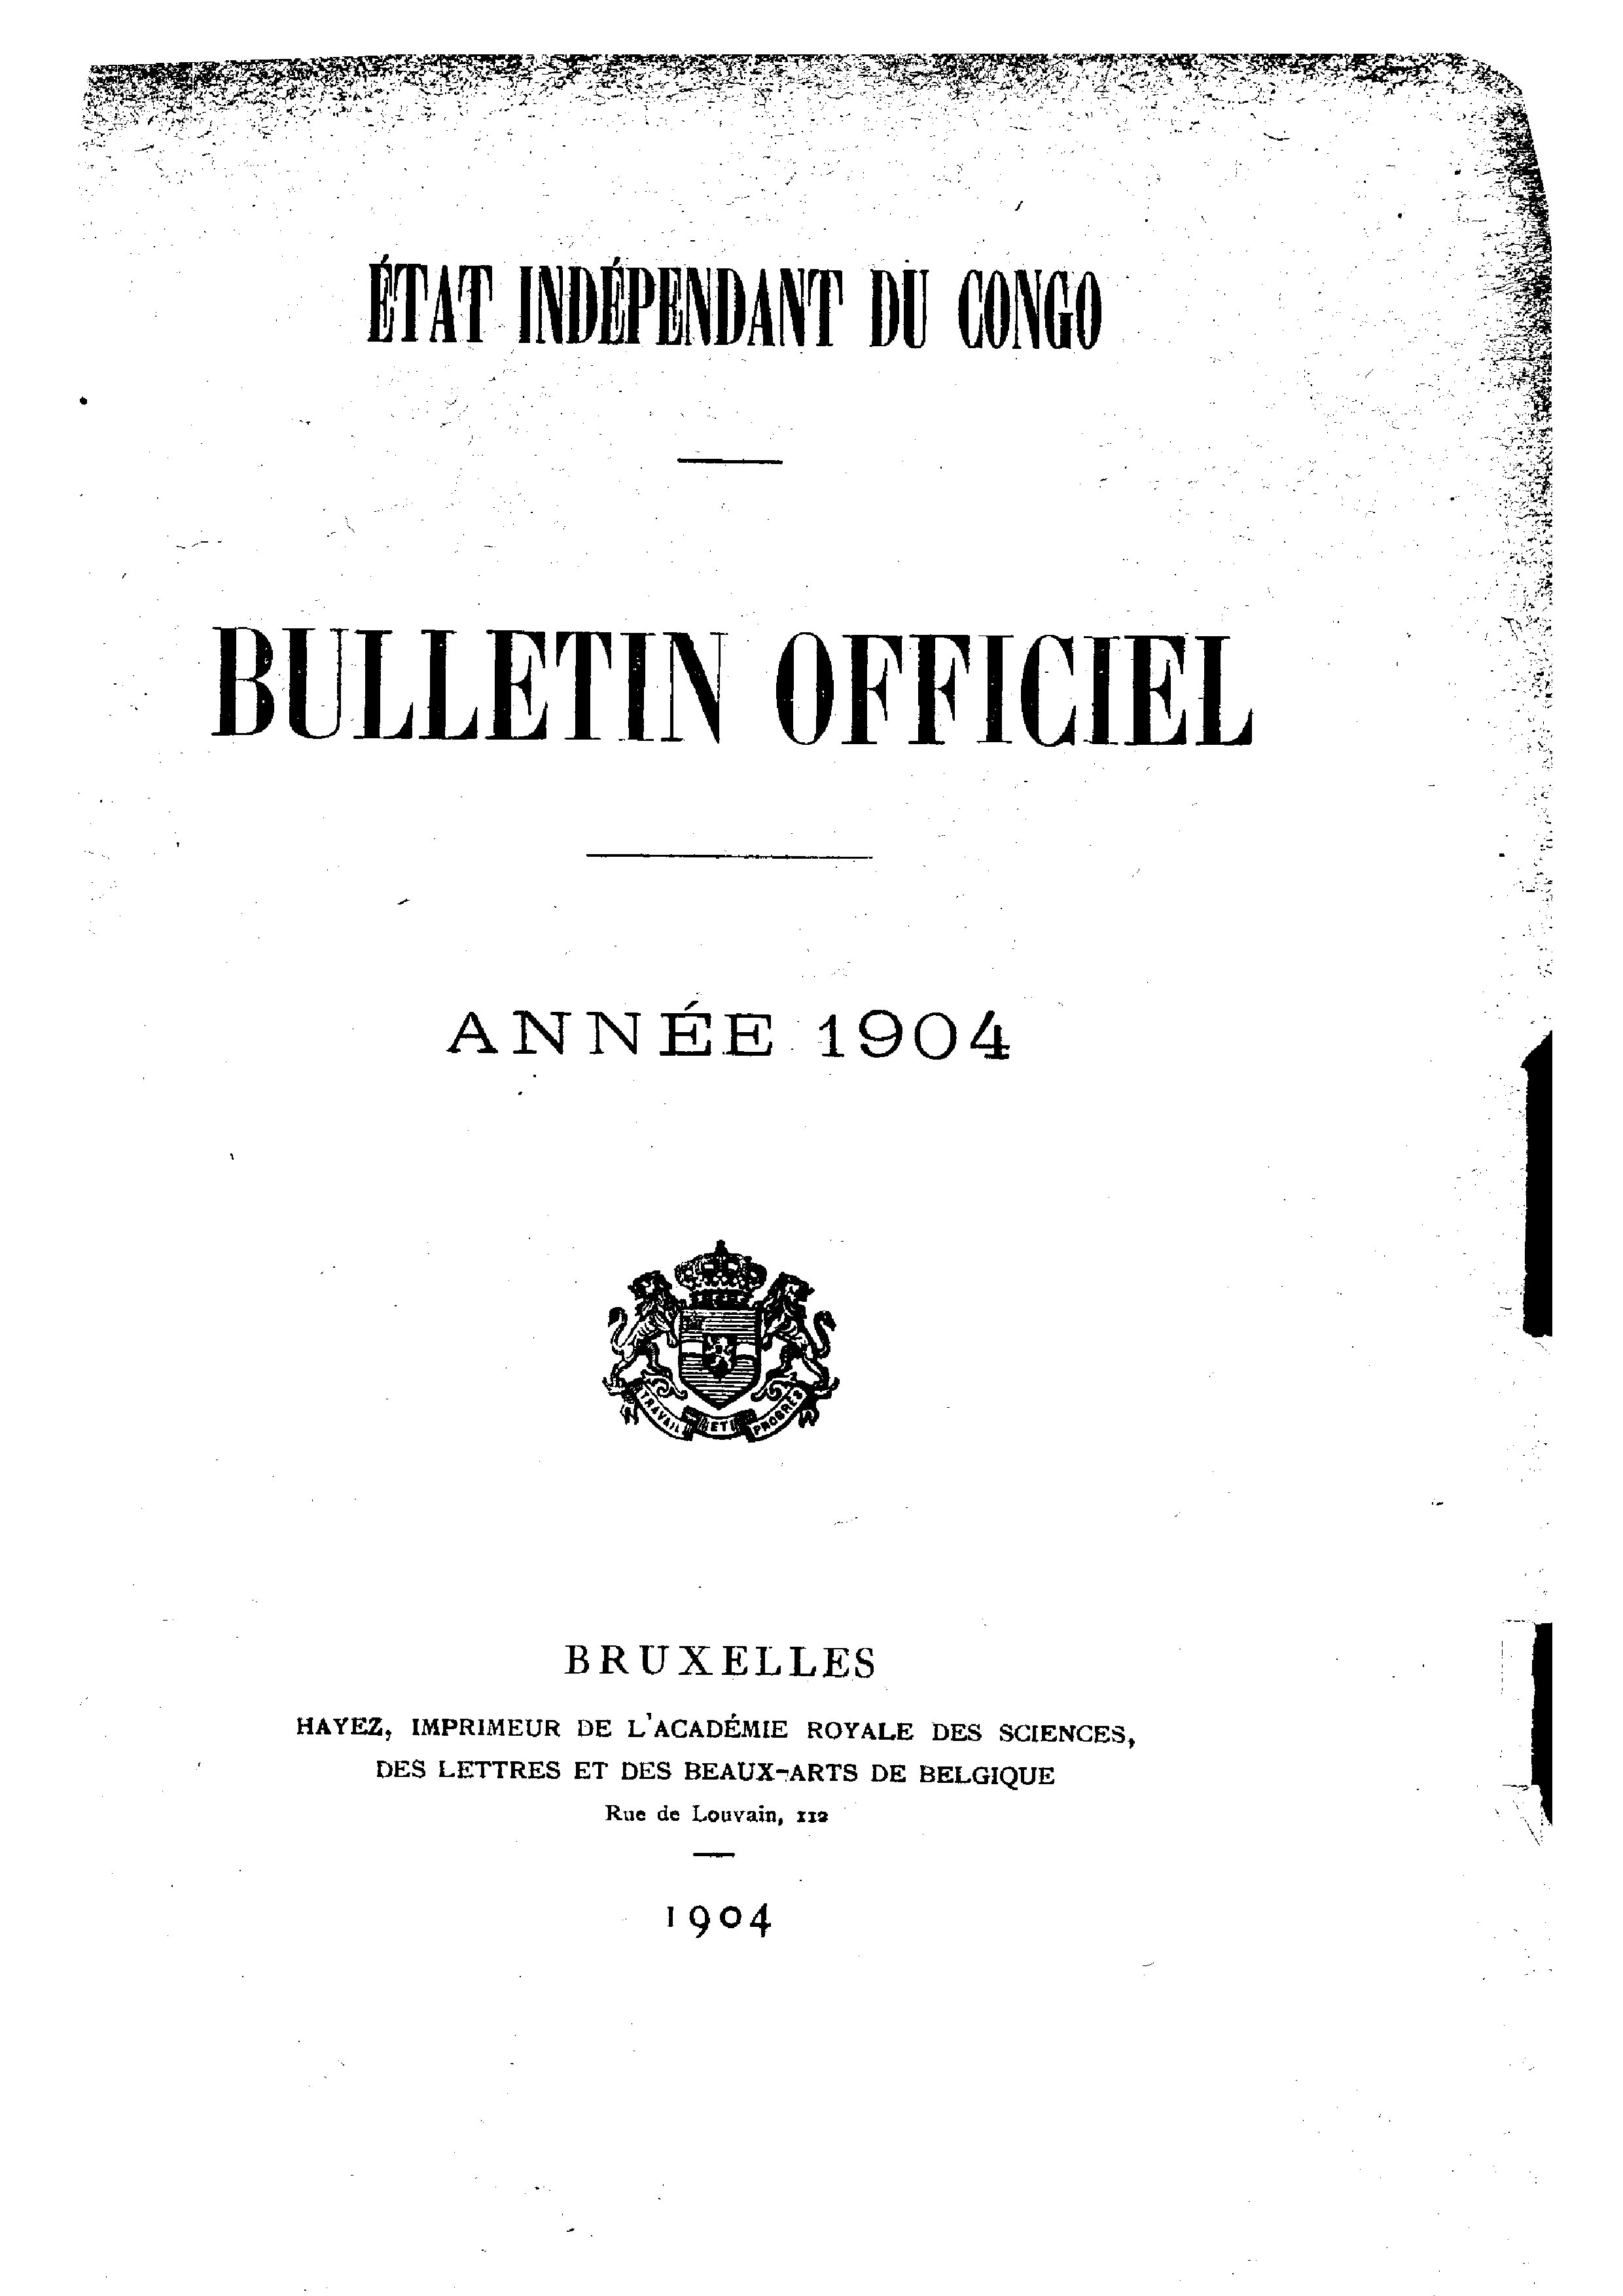 Book cover 202106132419: Etat Indépendant du Congo - roi Léopold II | Etat Indépendant du Congo - Bulletin Officiel – Année 1904